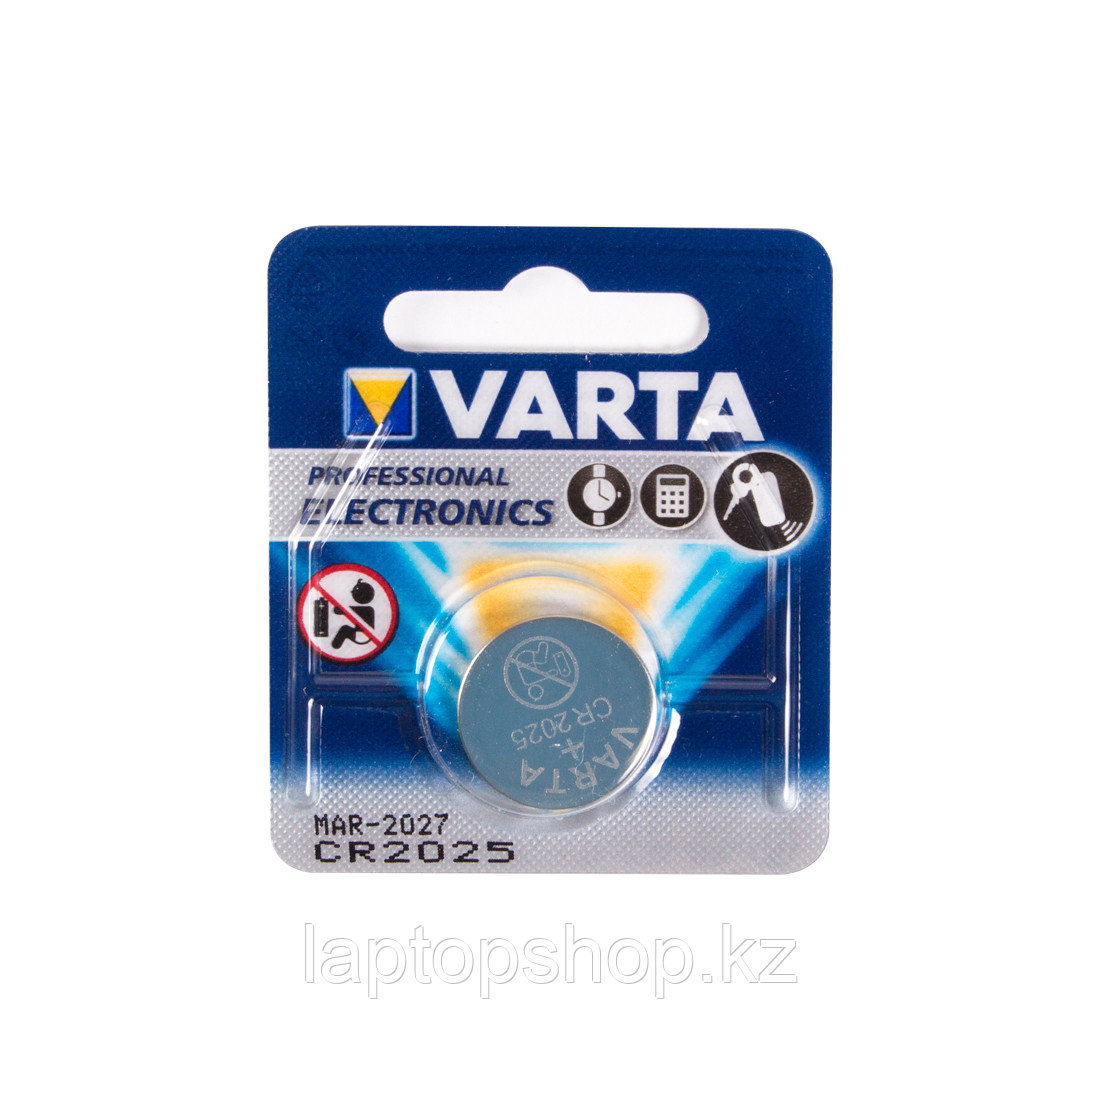 Батарейка VARTA CR2025-BP1, Lithium Battery, 3V, 1 шт.